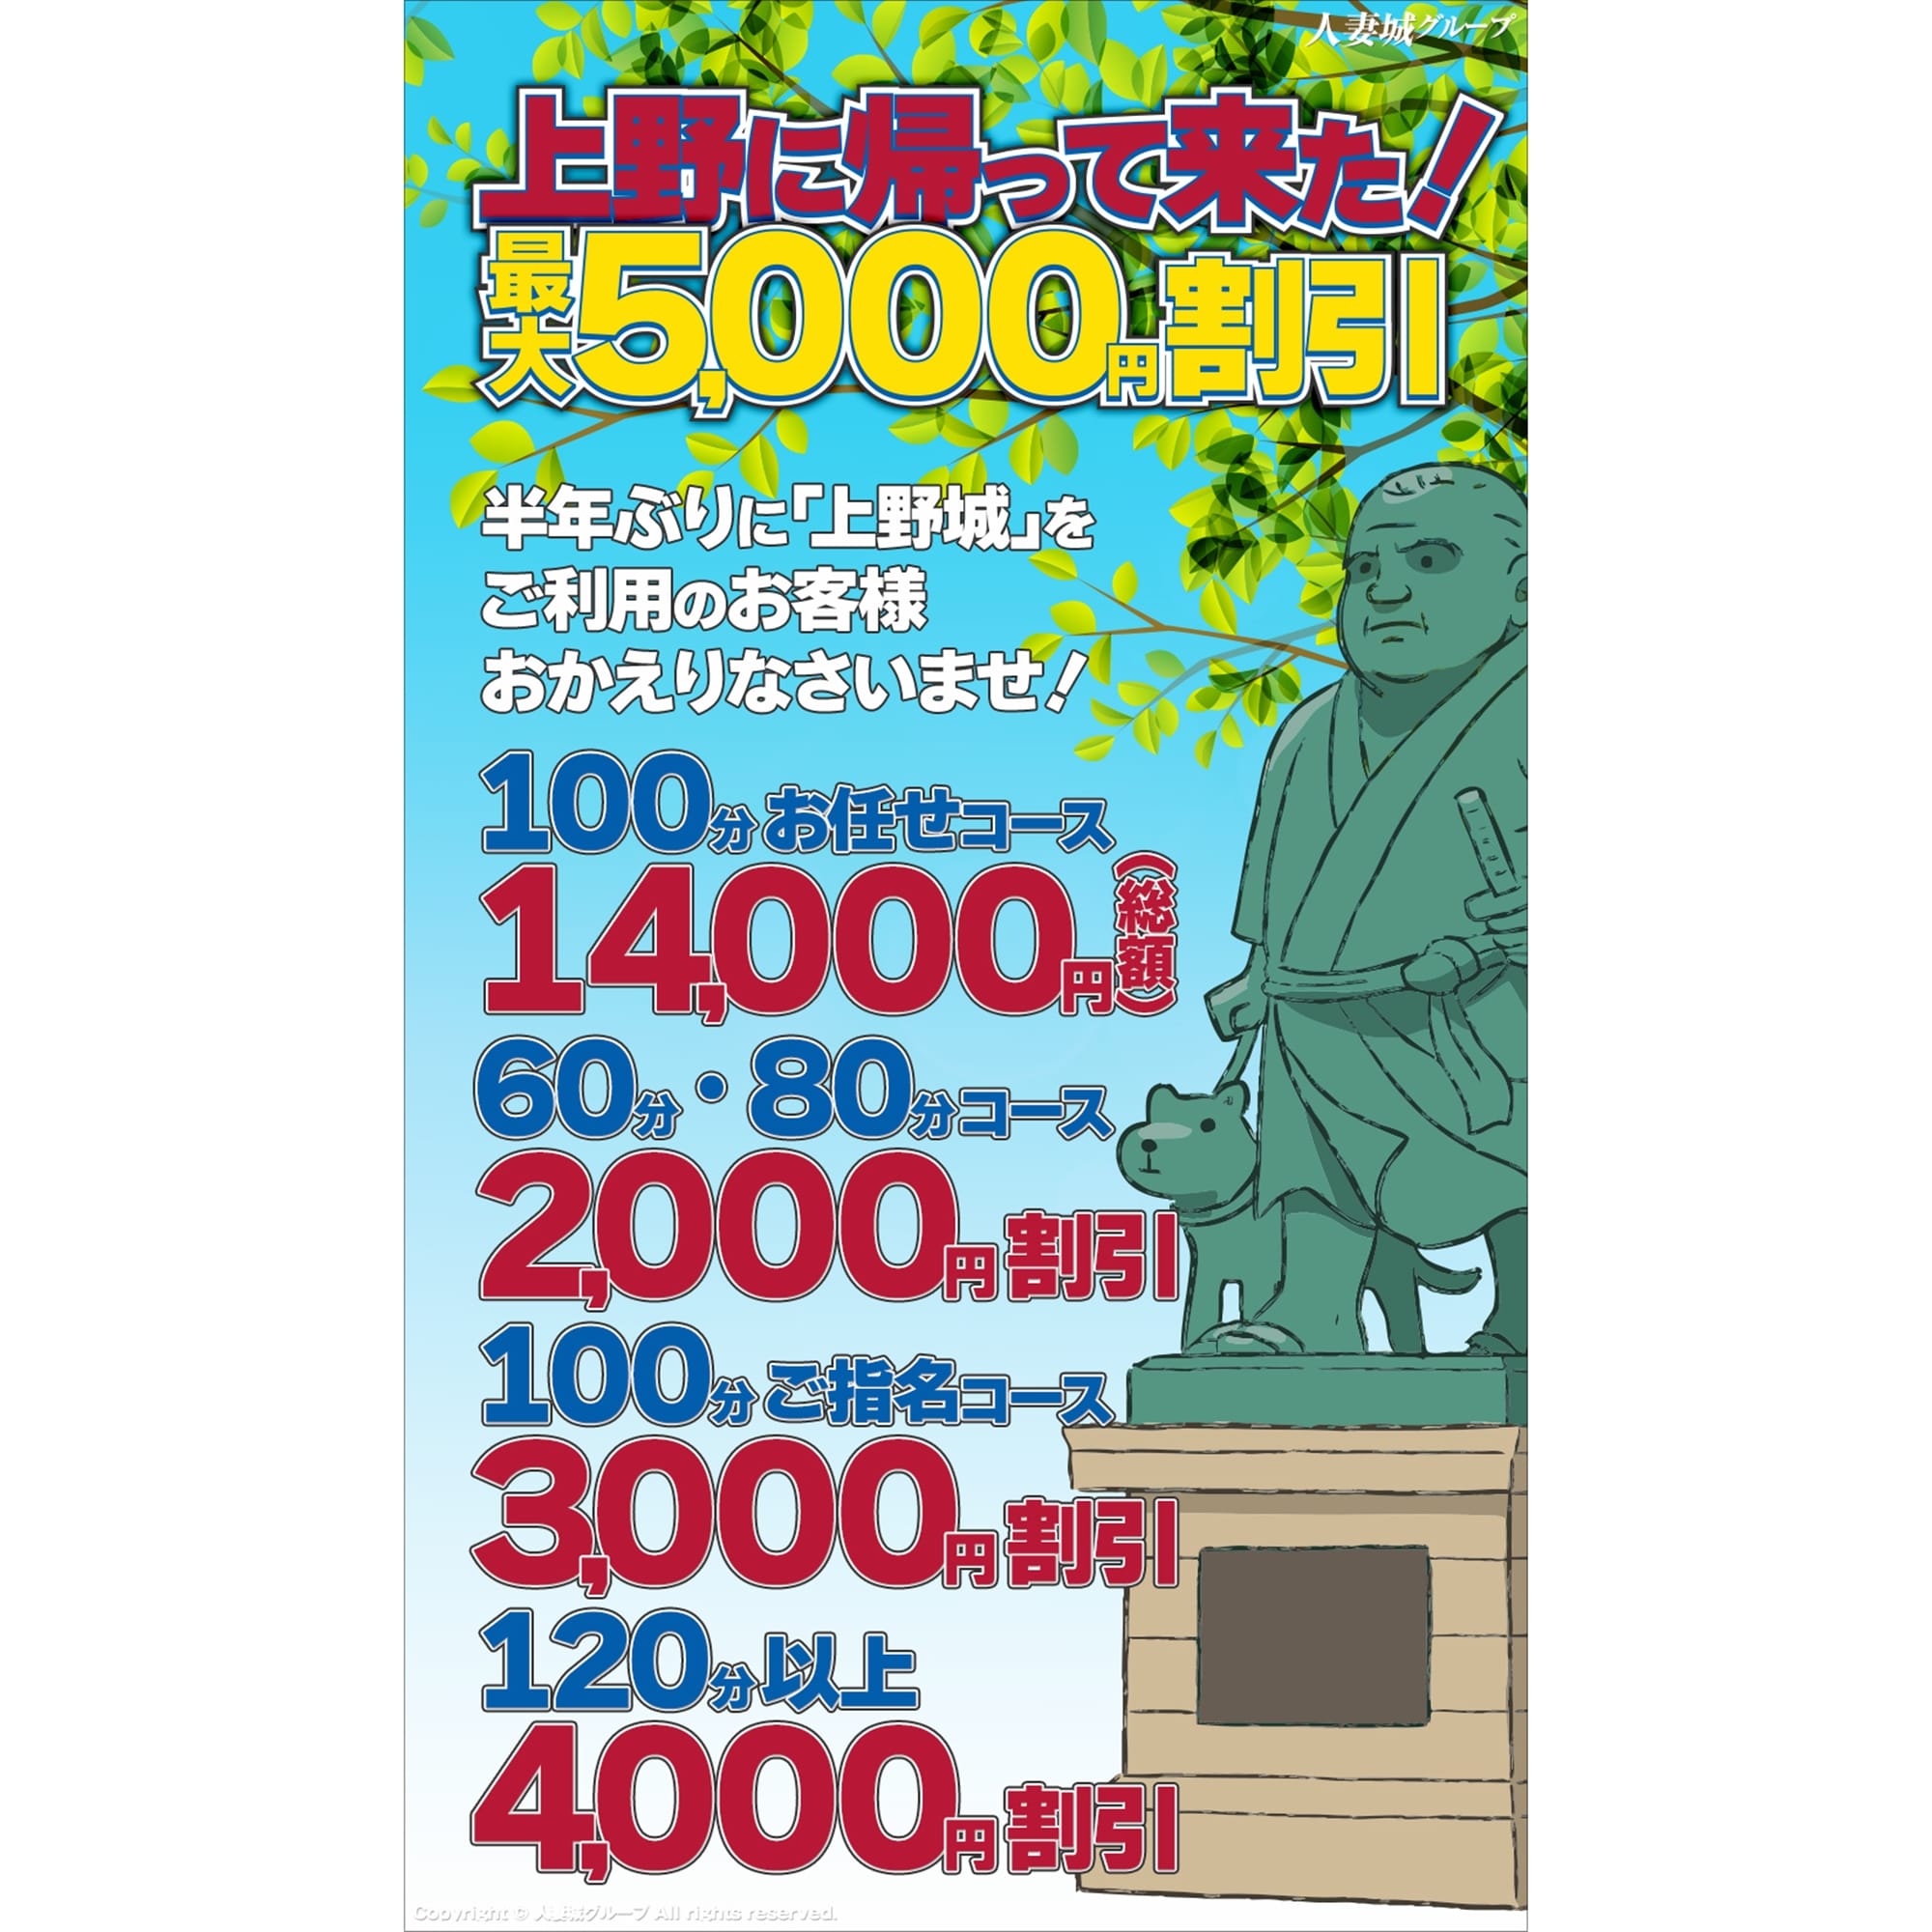 「上野に帰って来た!」04/25(木) 14:56 | 上野人妻城のお得なニュース